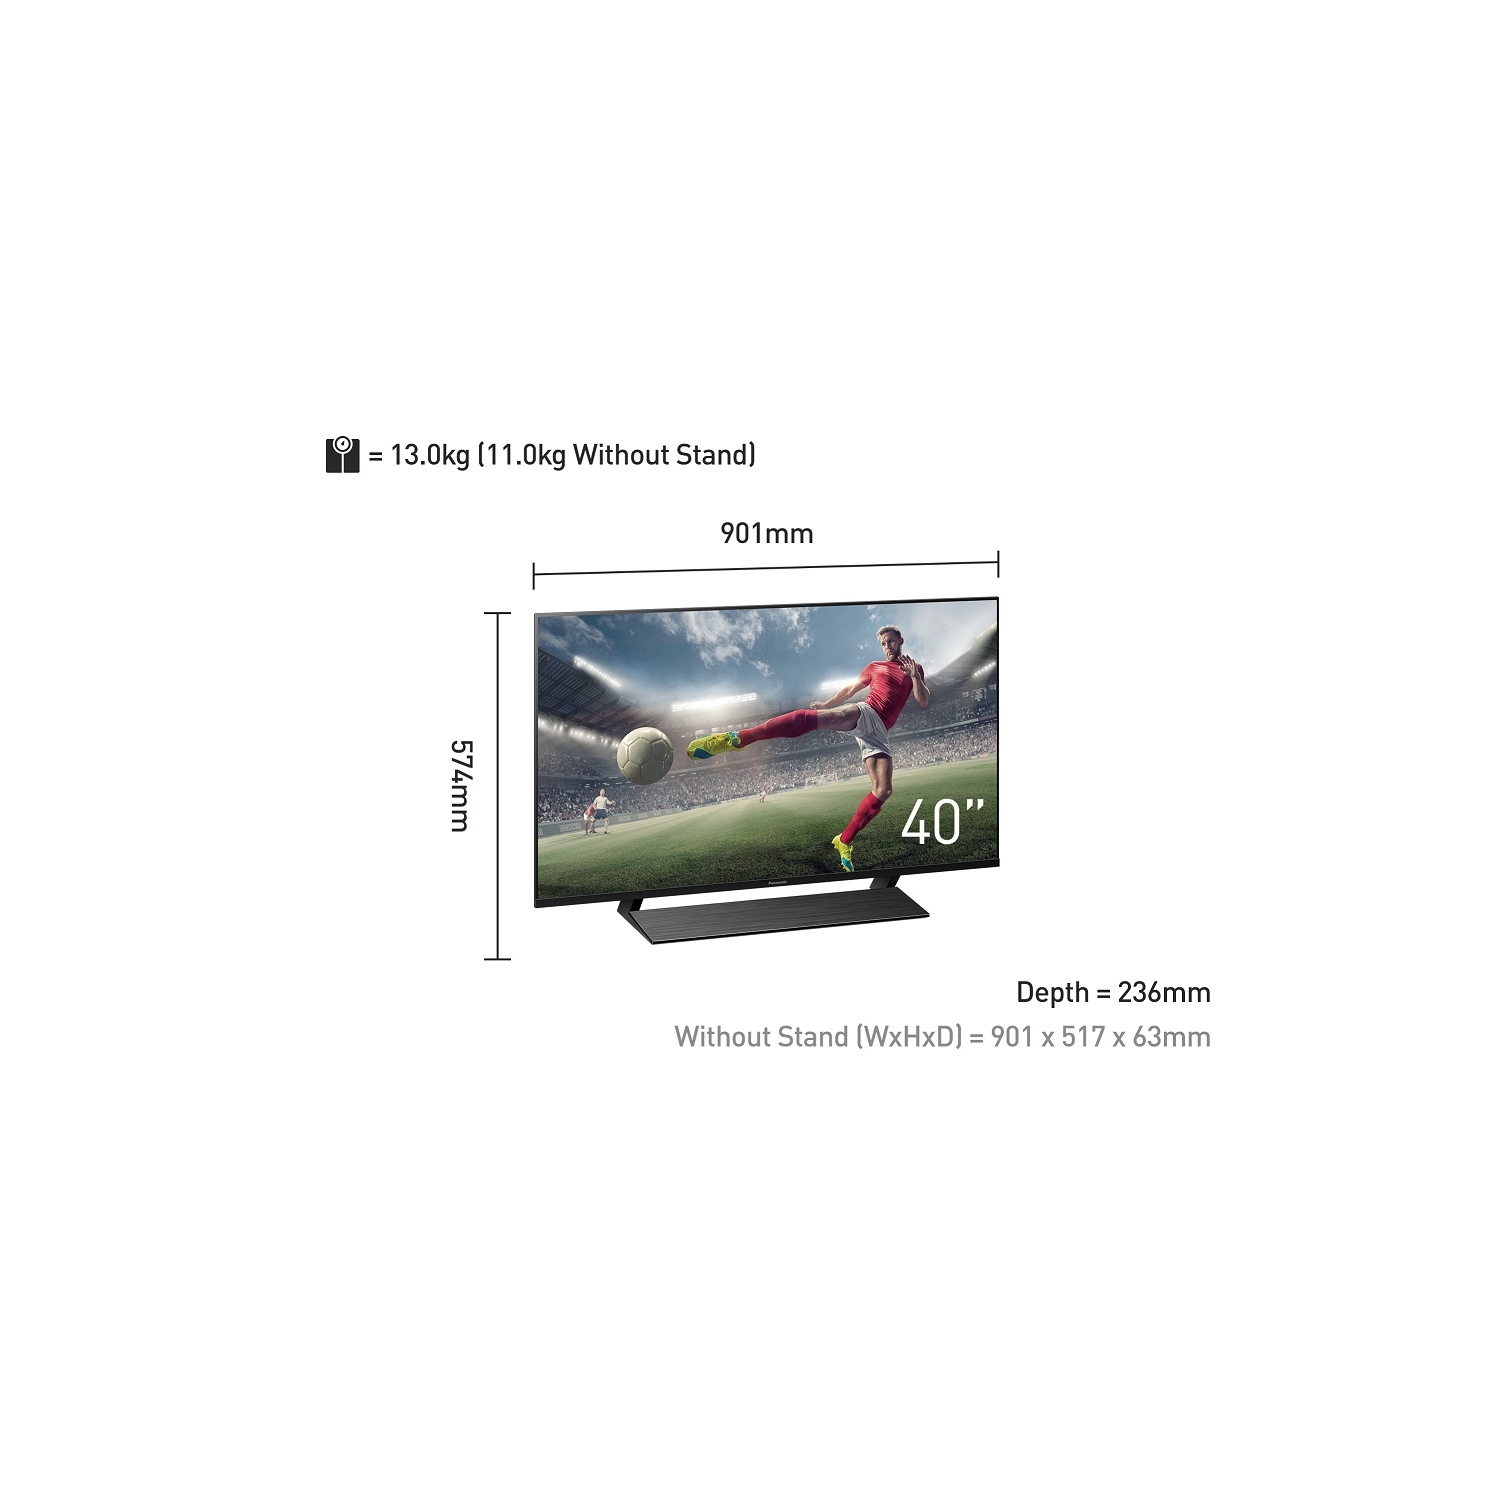 Panasonic 40" Premium 4K Ultra HD HDR LED Smart TV - 2